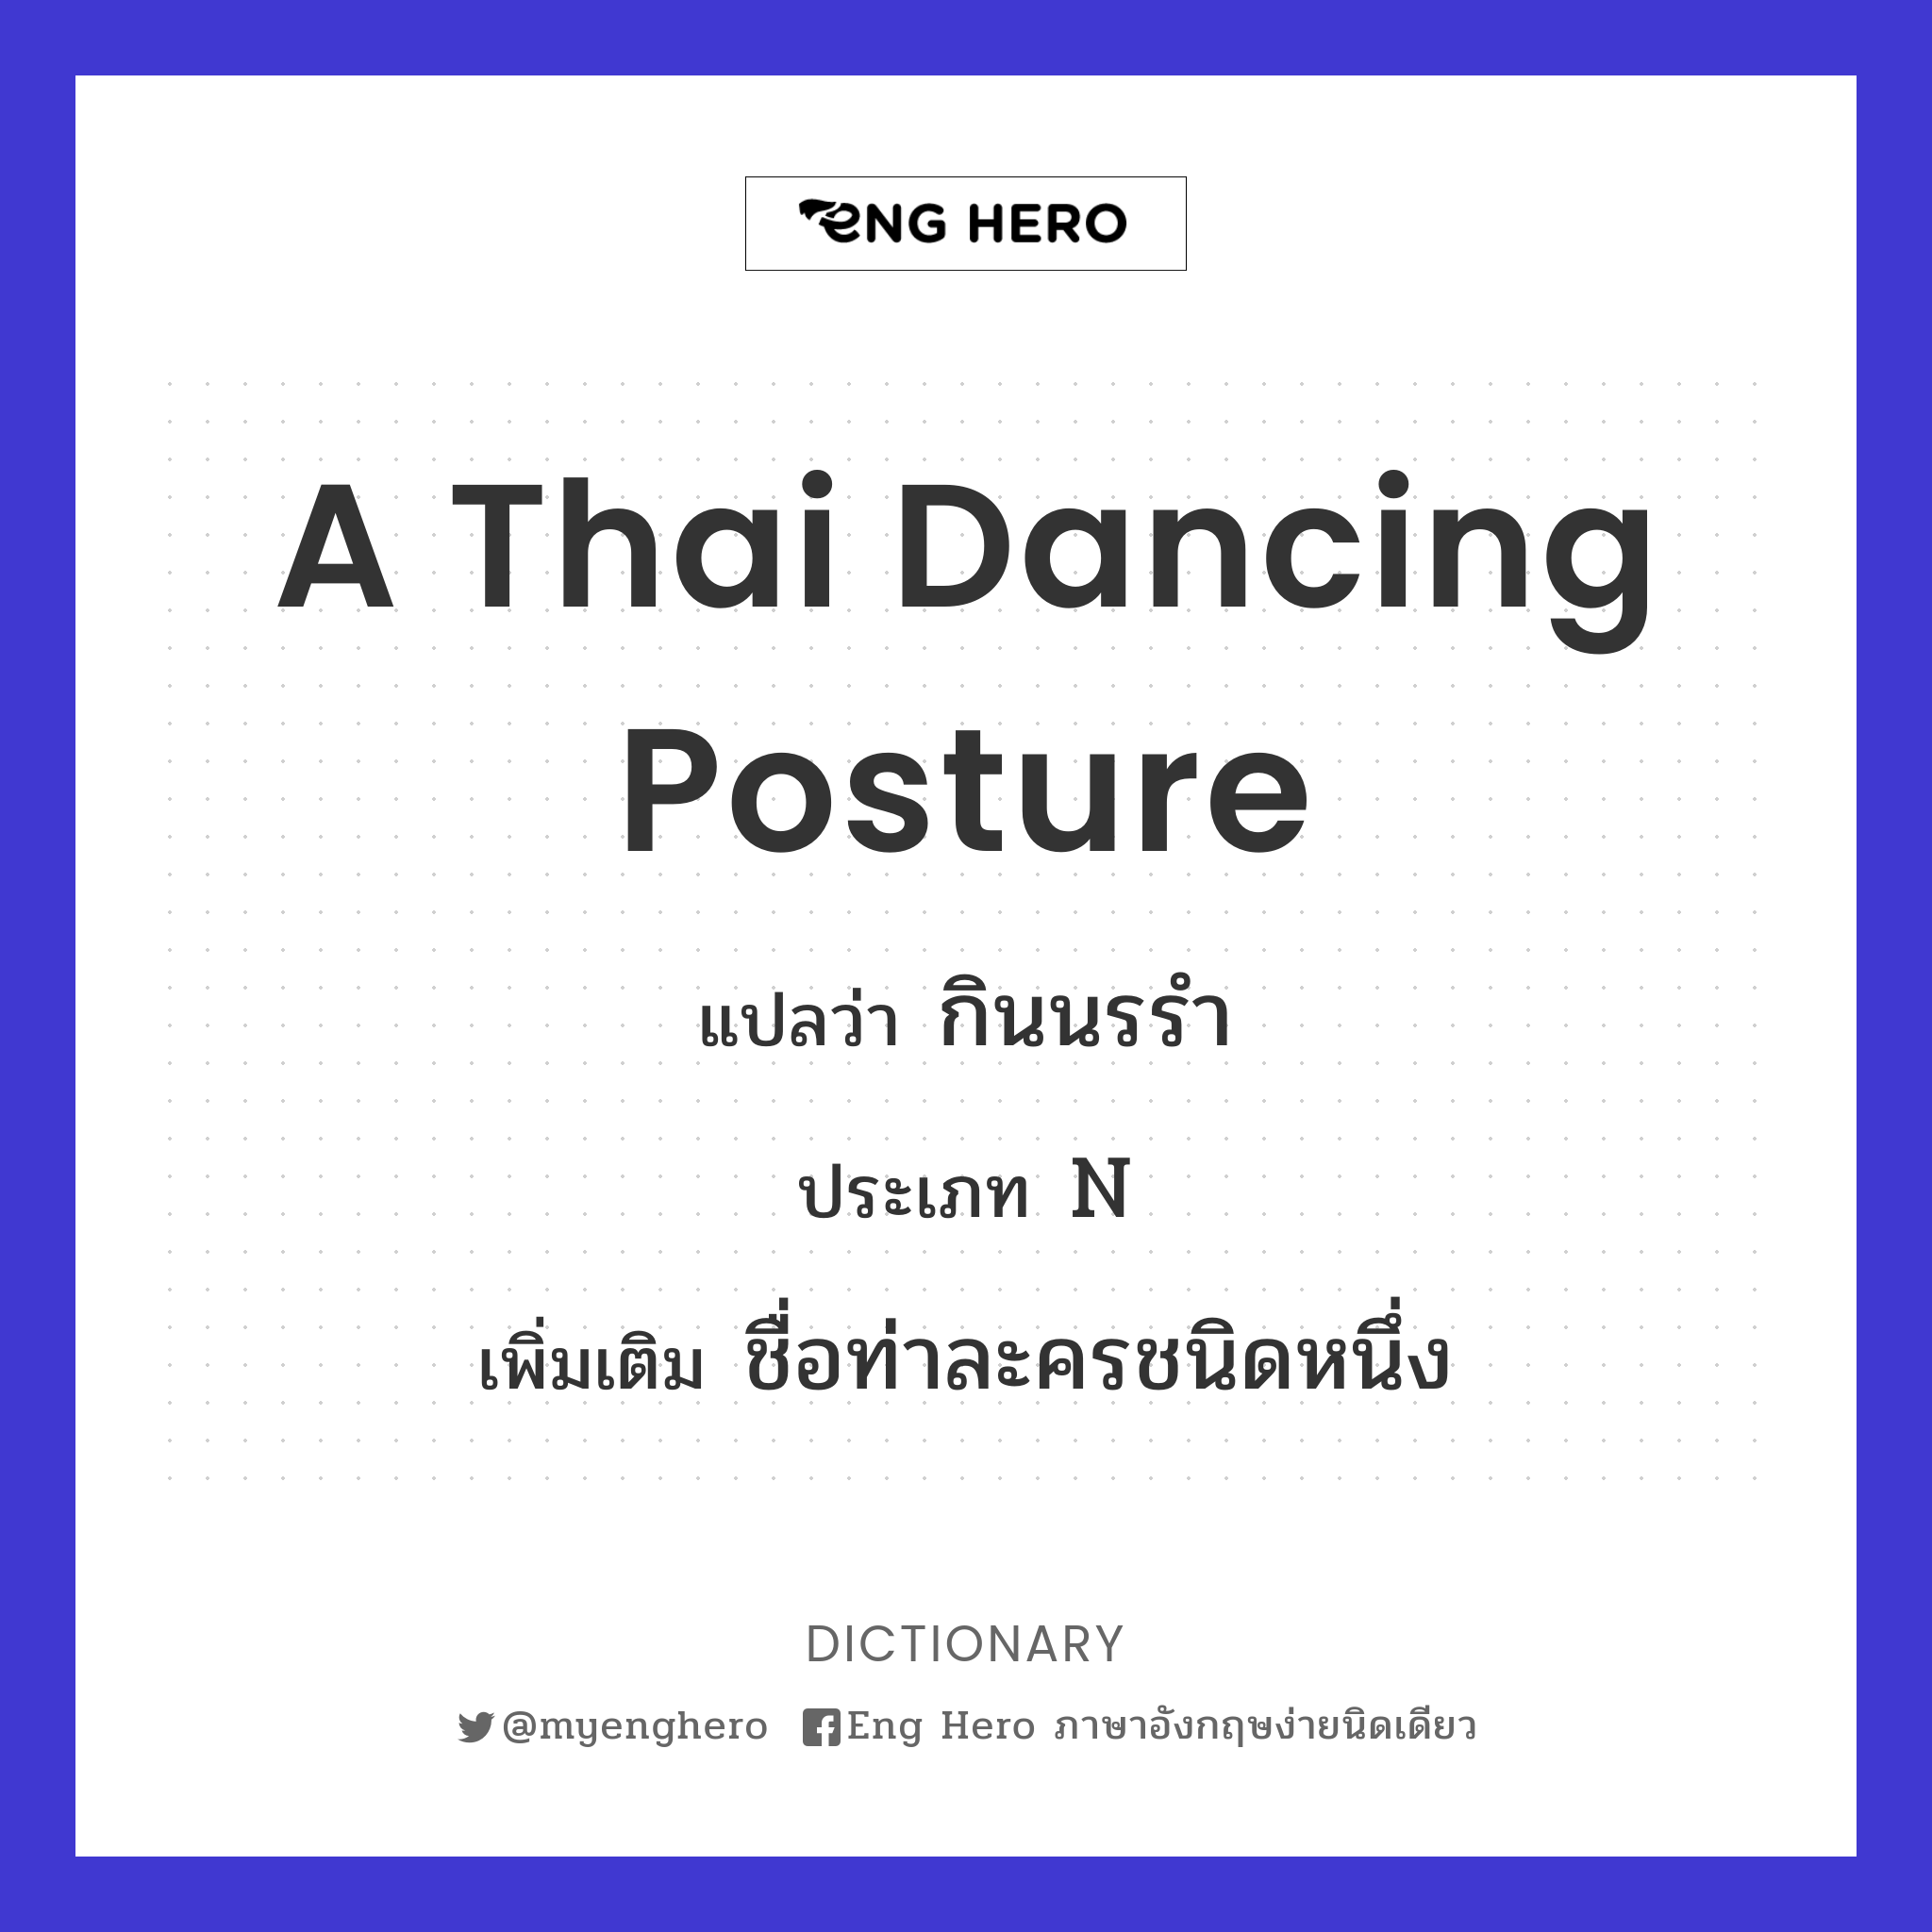 a Thai dancing posture